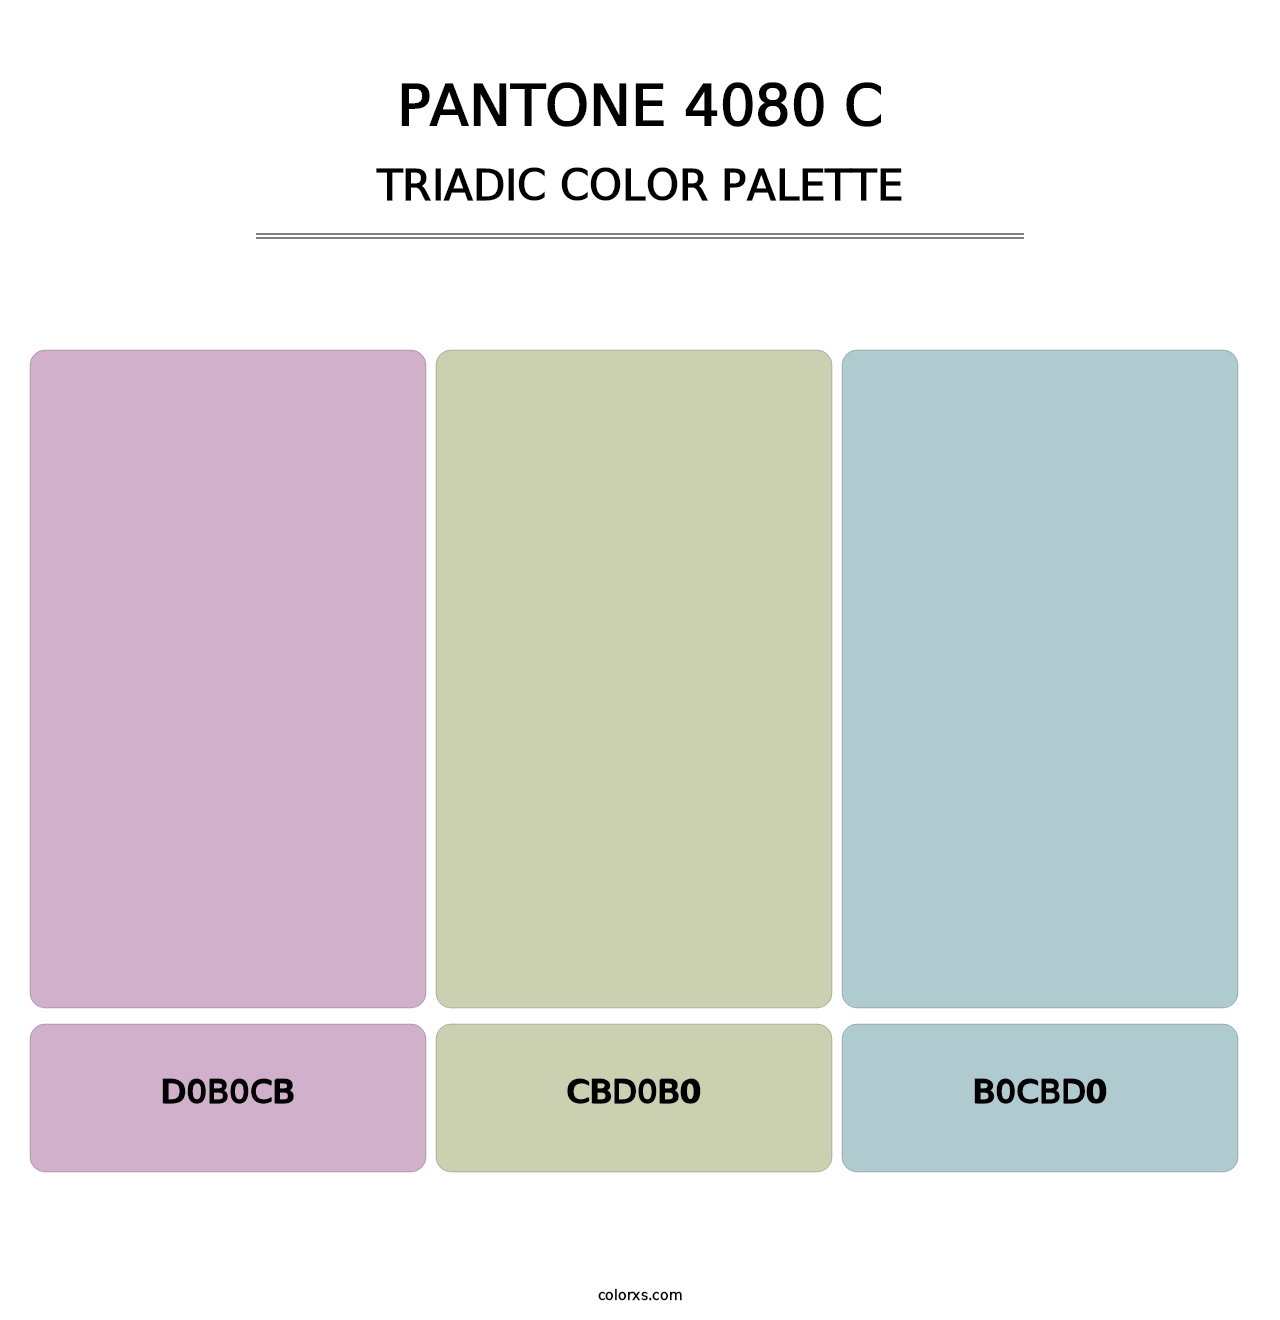 PANTONE 4080 C - Triadic Color Palette